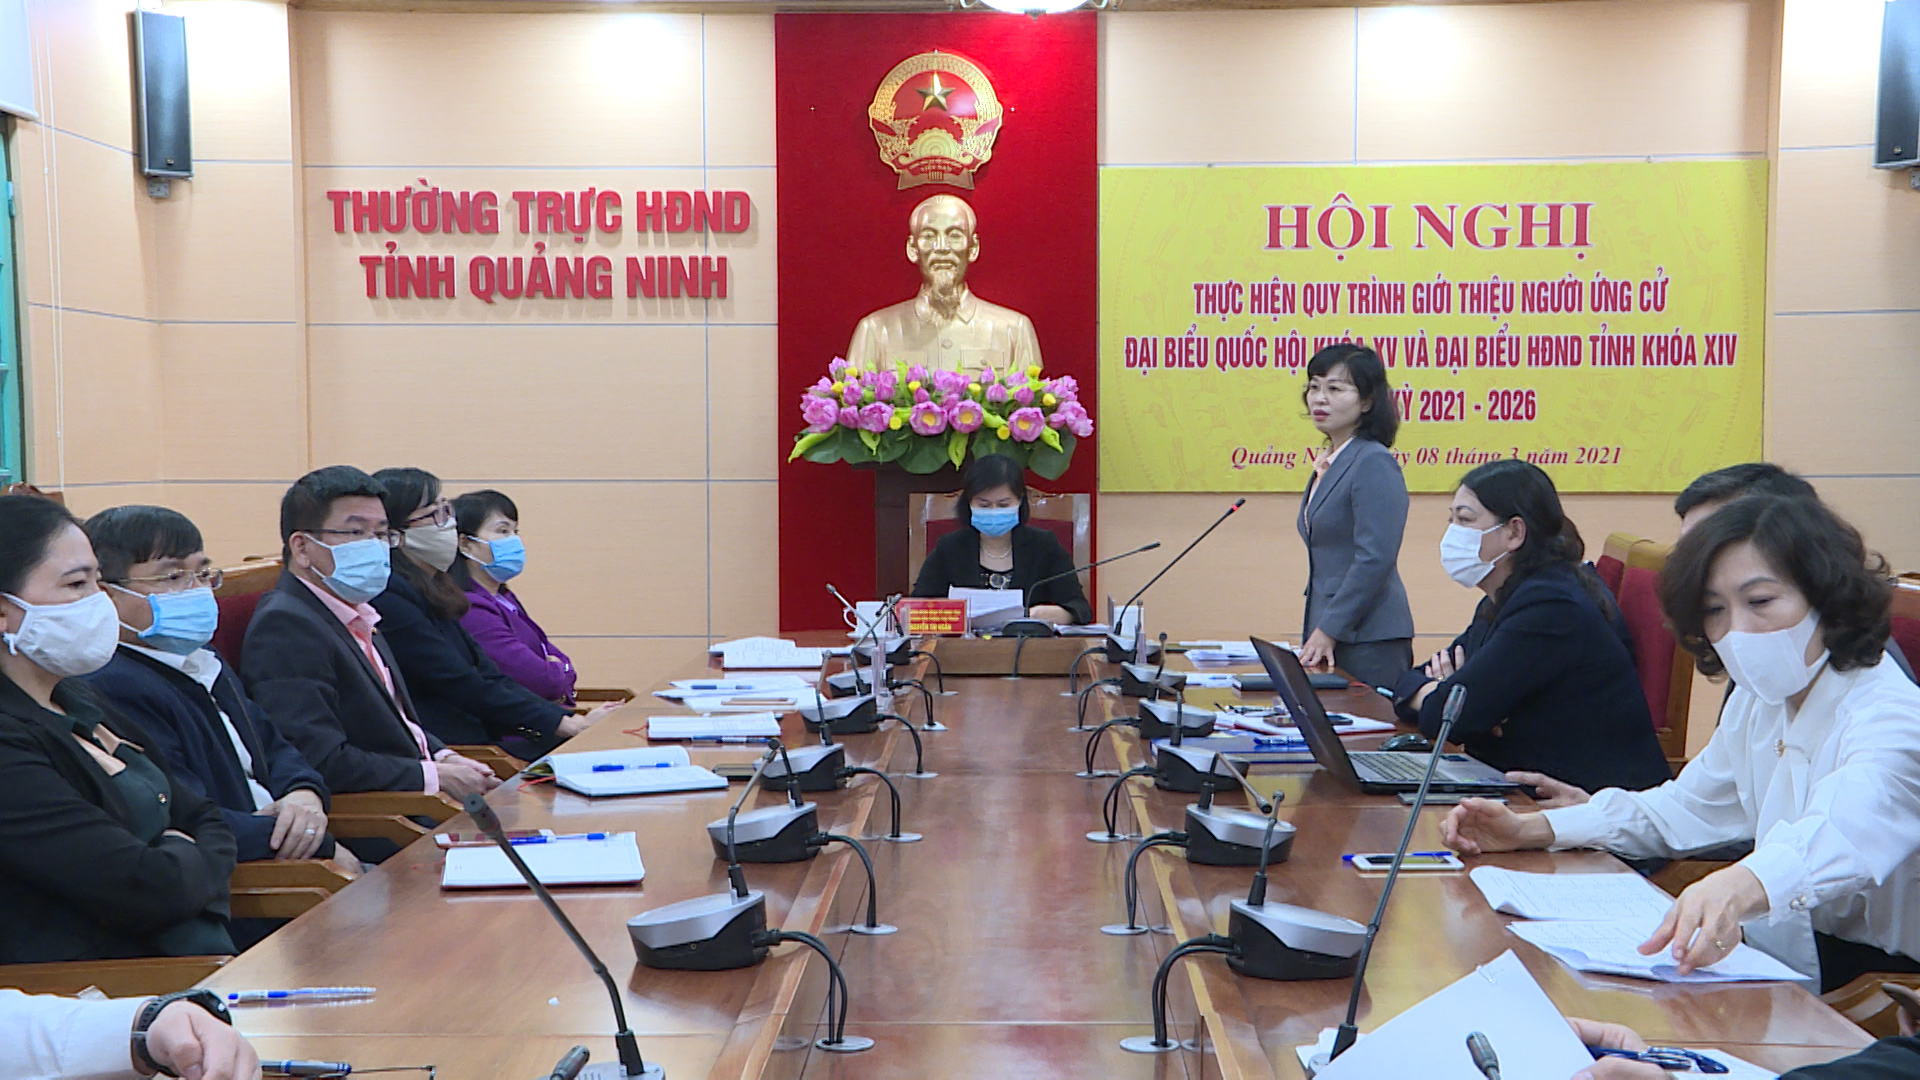 Đồng chí Trịnh Thị Minh Thanh, Ủy viên Ban thường vụ tỉnh ủy, Phó Chủ tịch Thường trực HĐND tỉnh dự và chỉ đạo hội nghị